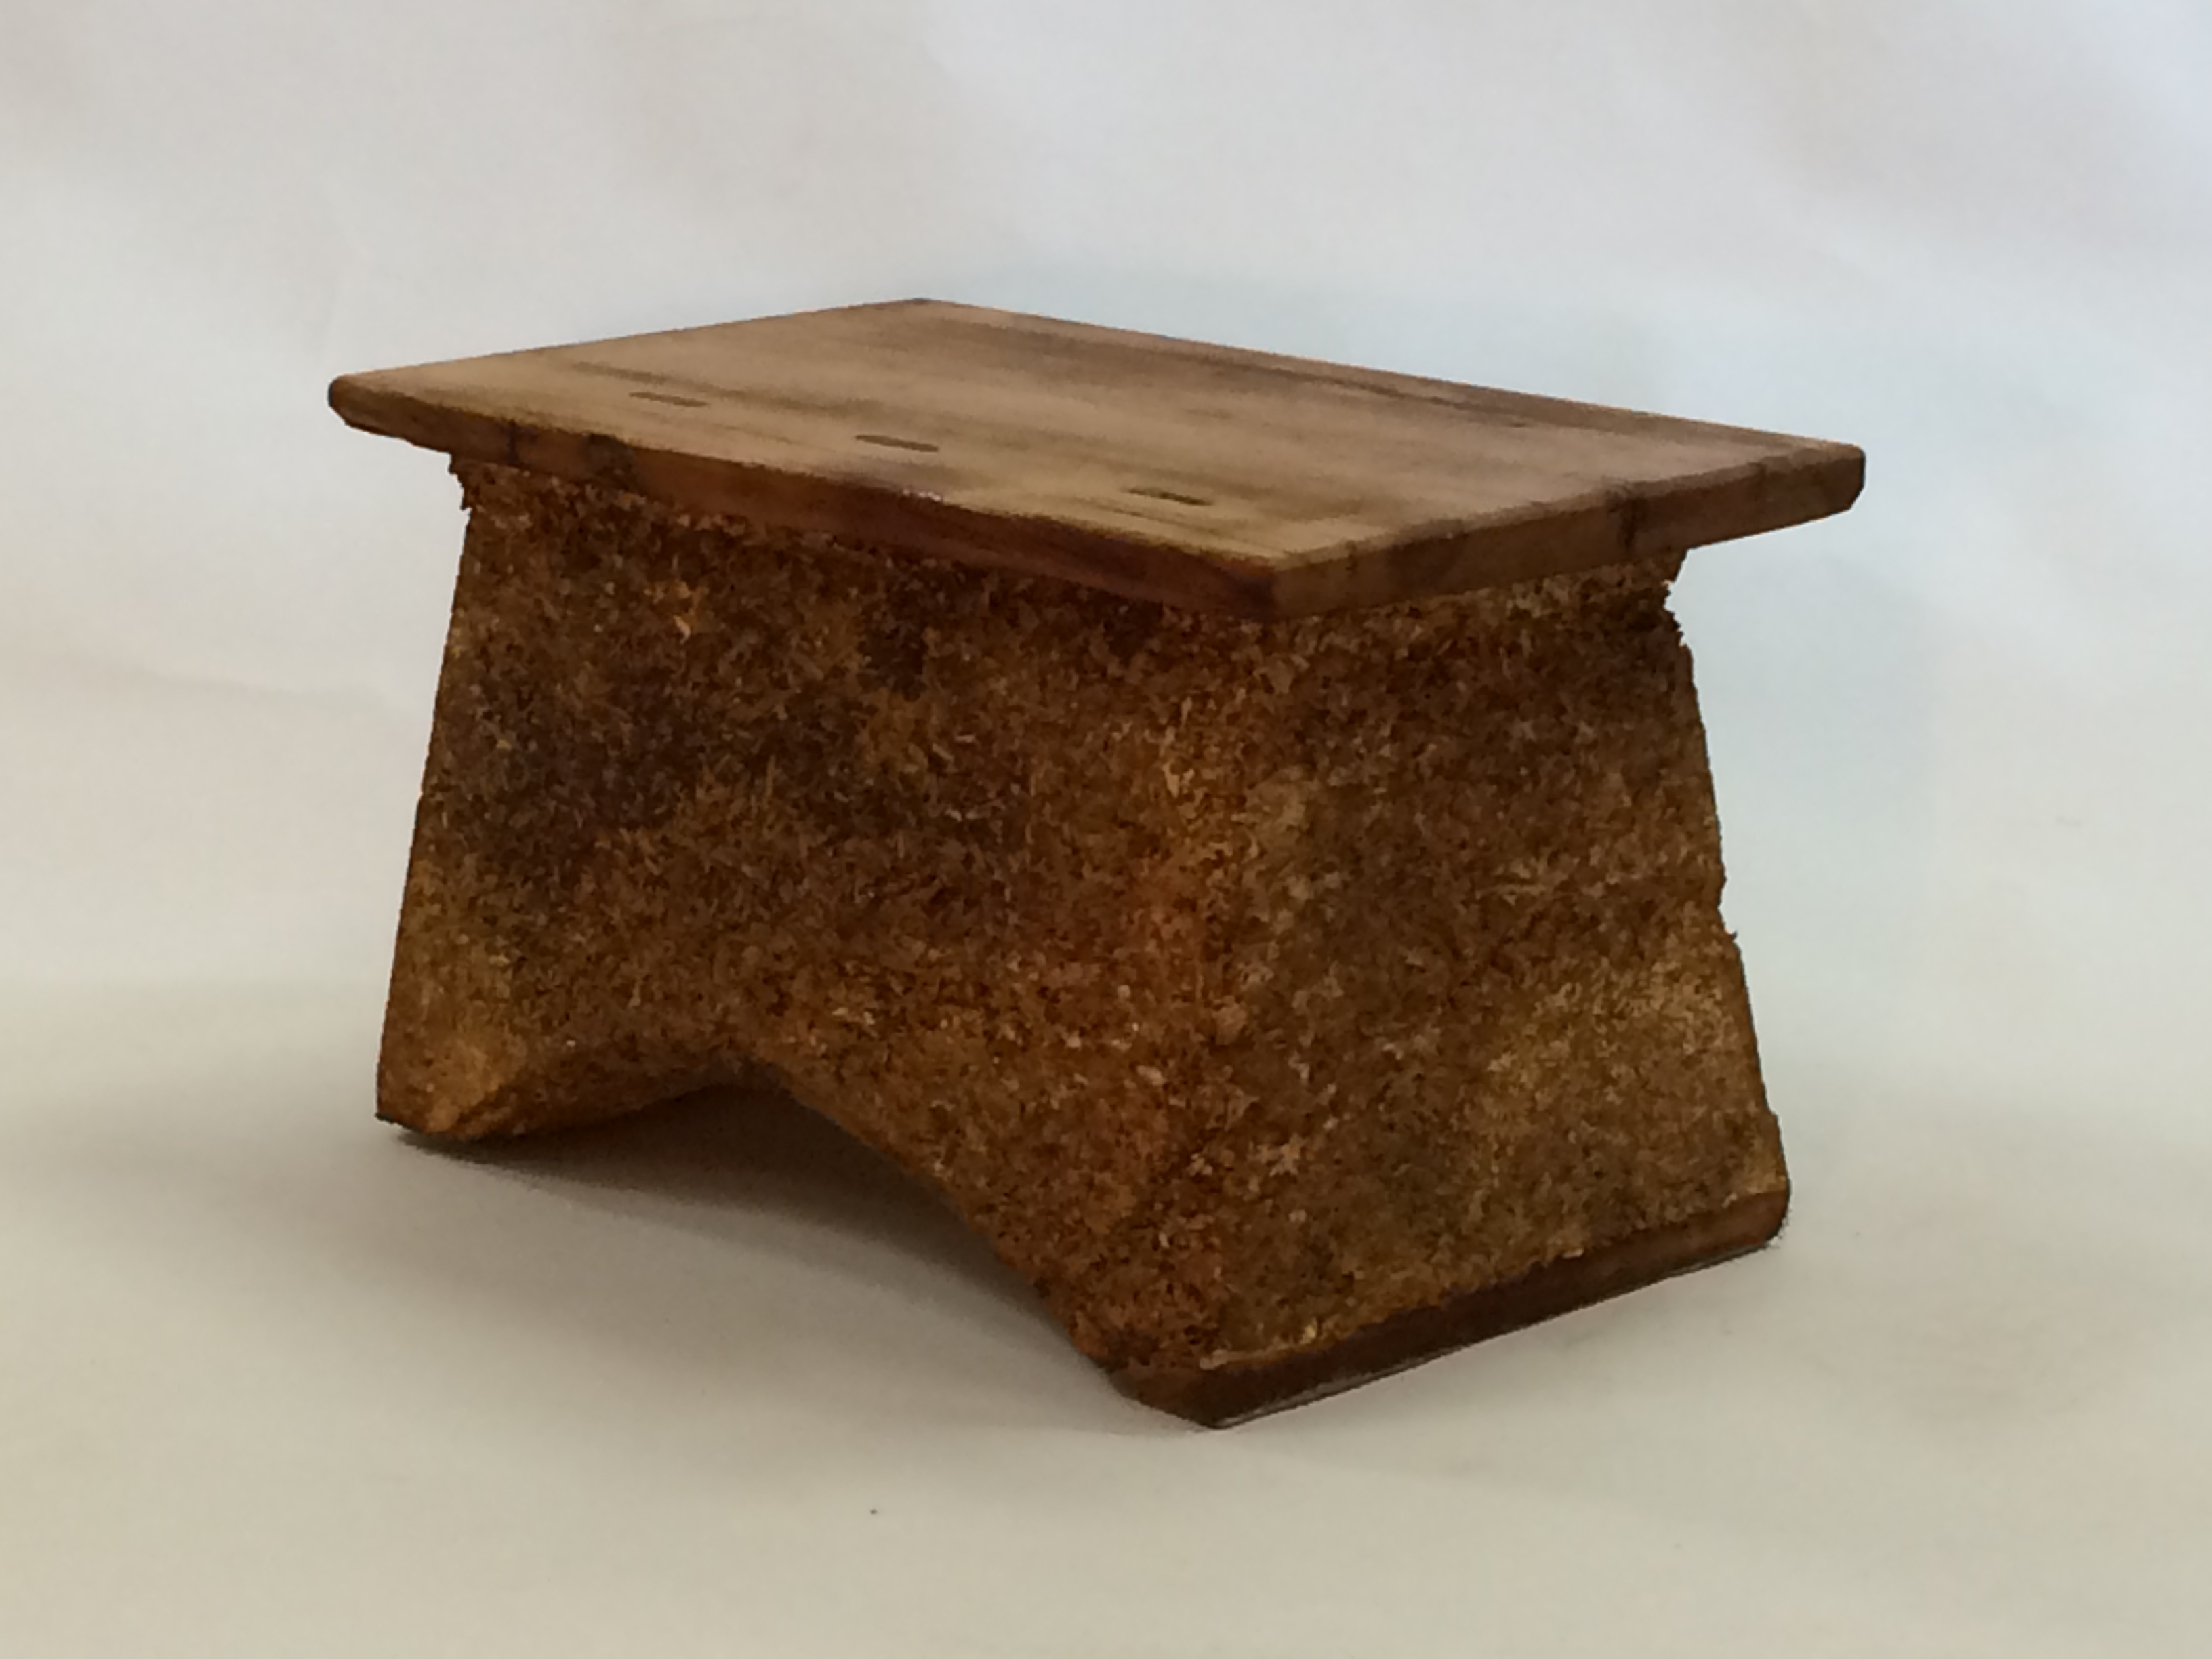 An early hemp stool